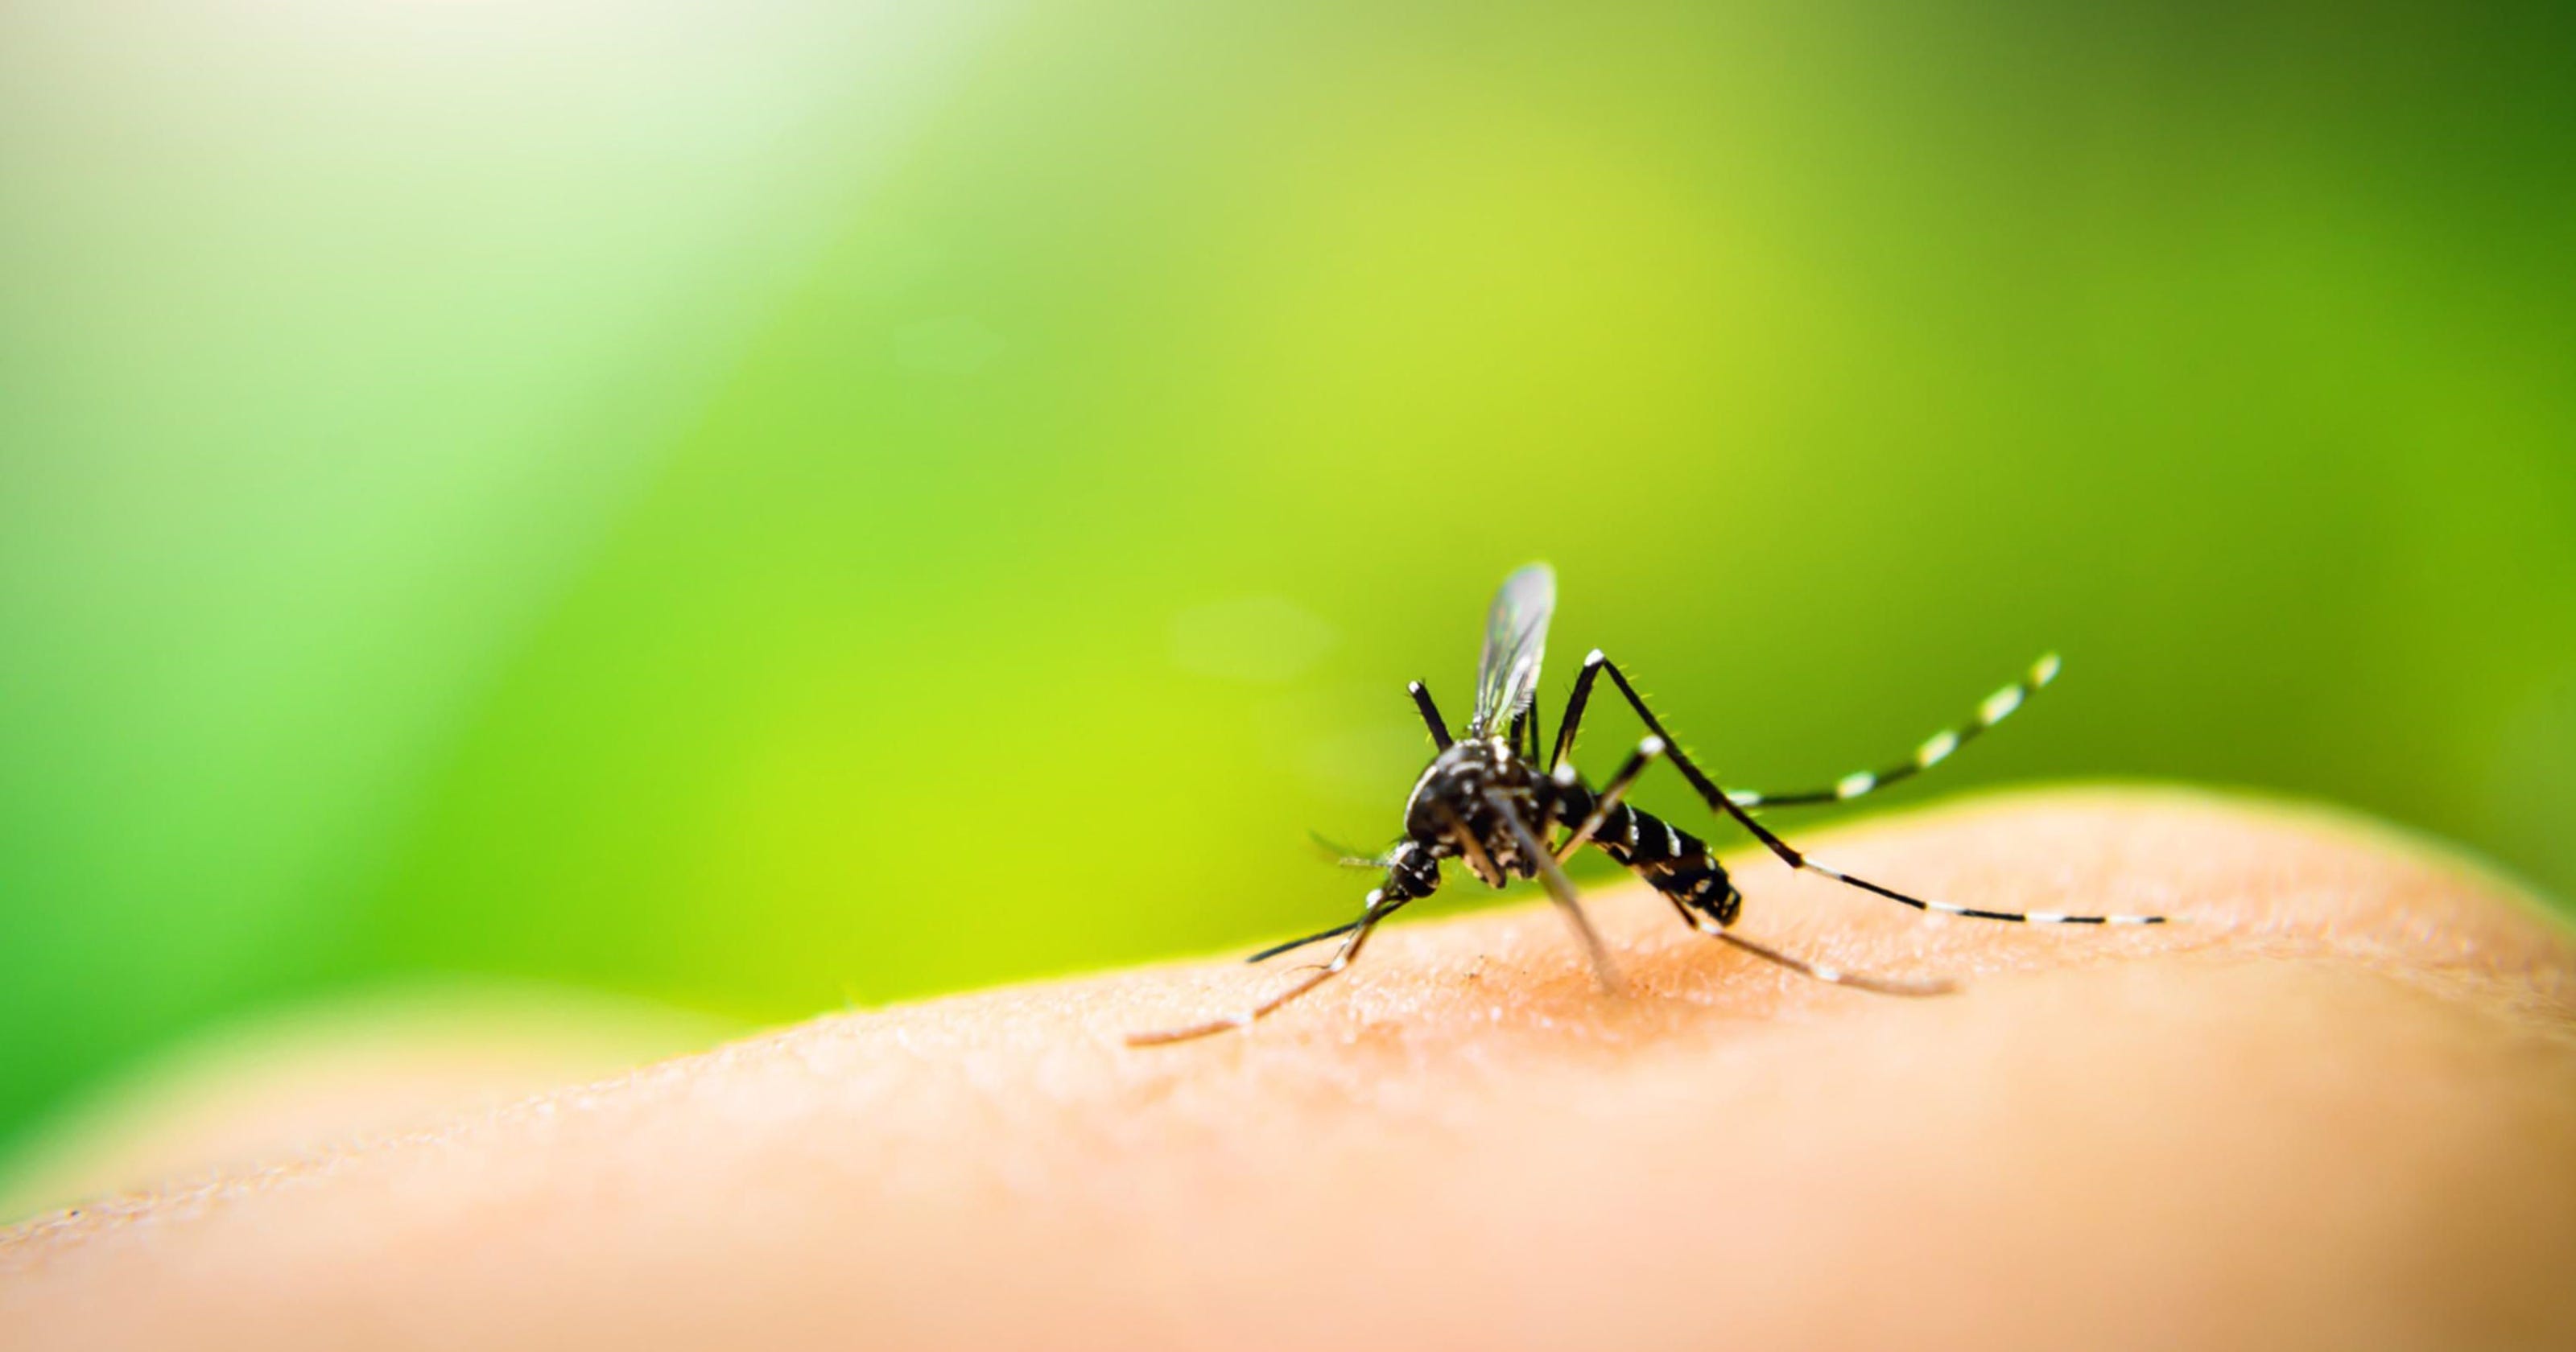 فطريات معدلة تنجح في القضاء على البعوض المسبب لـ “الملاريا”